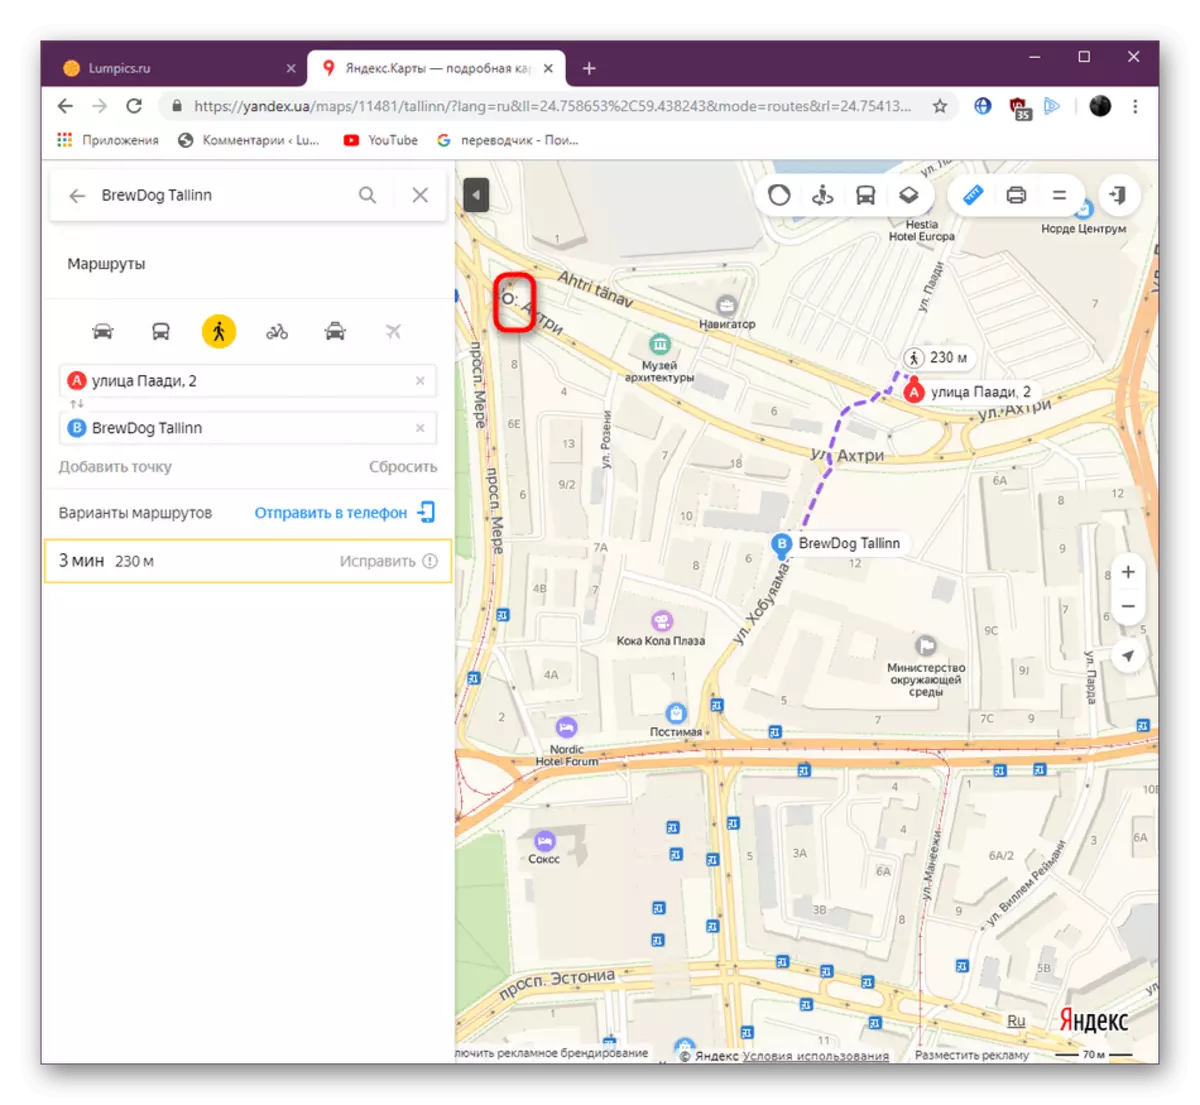 Yandex.maps वेबसाइटवरील साधन साधनासाठी प्रथम पॉइंटची स्थापना